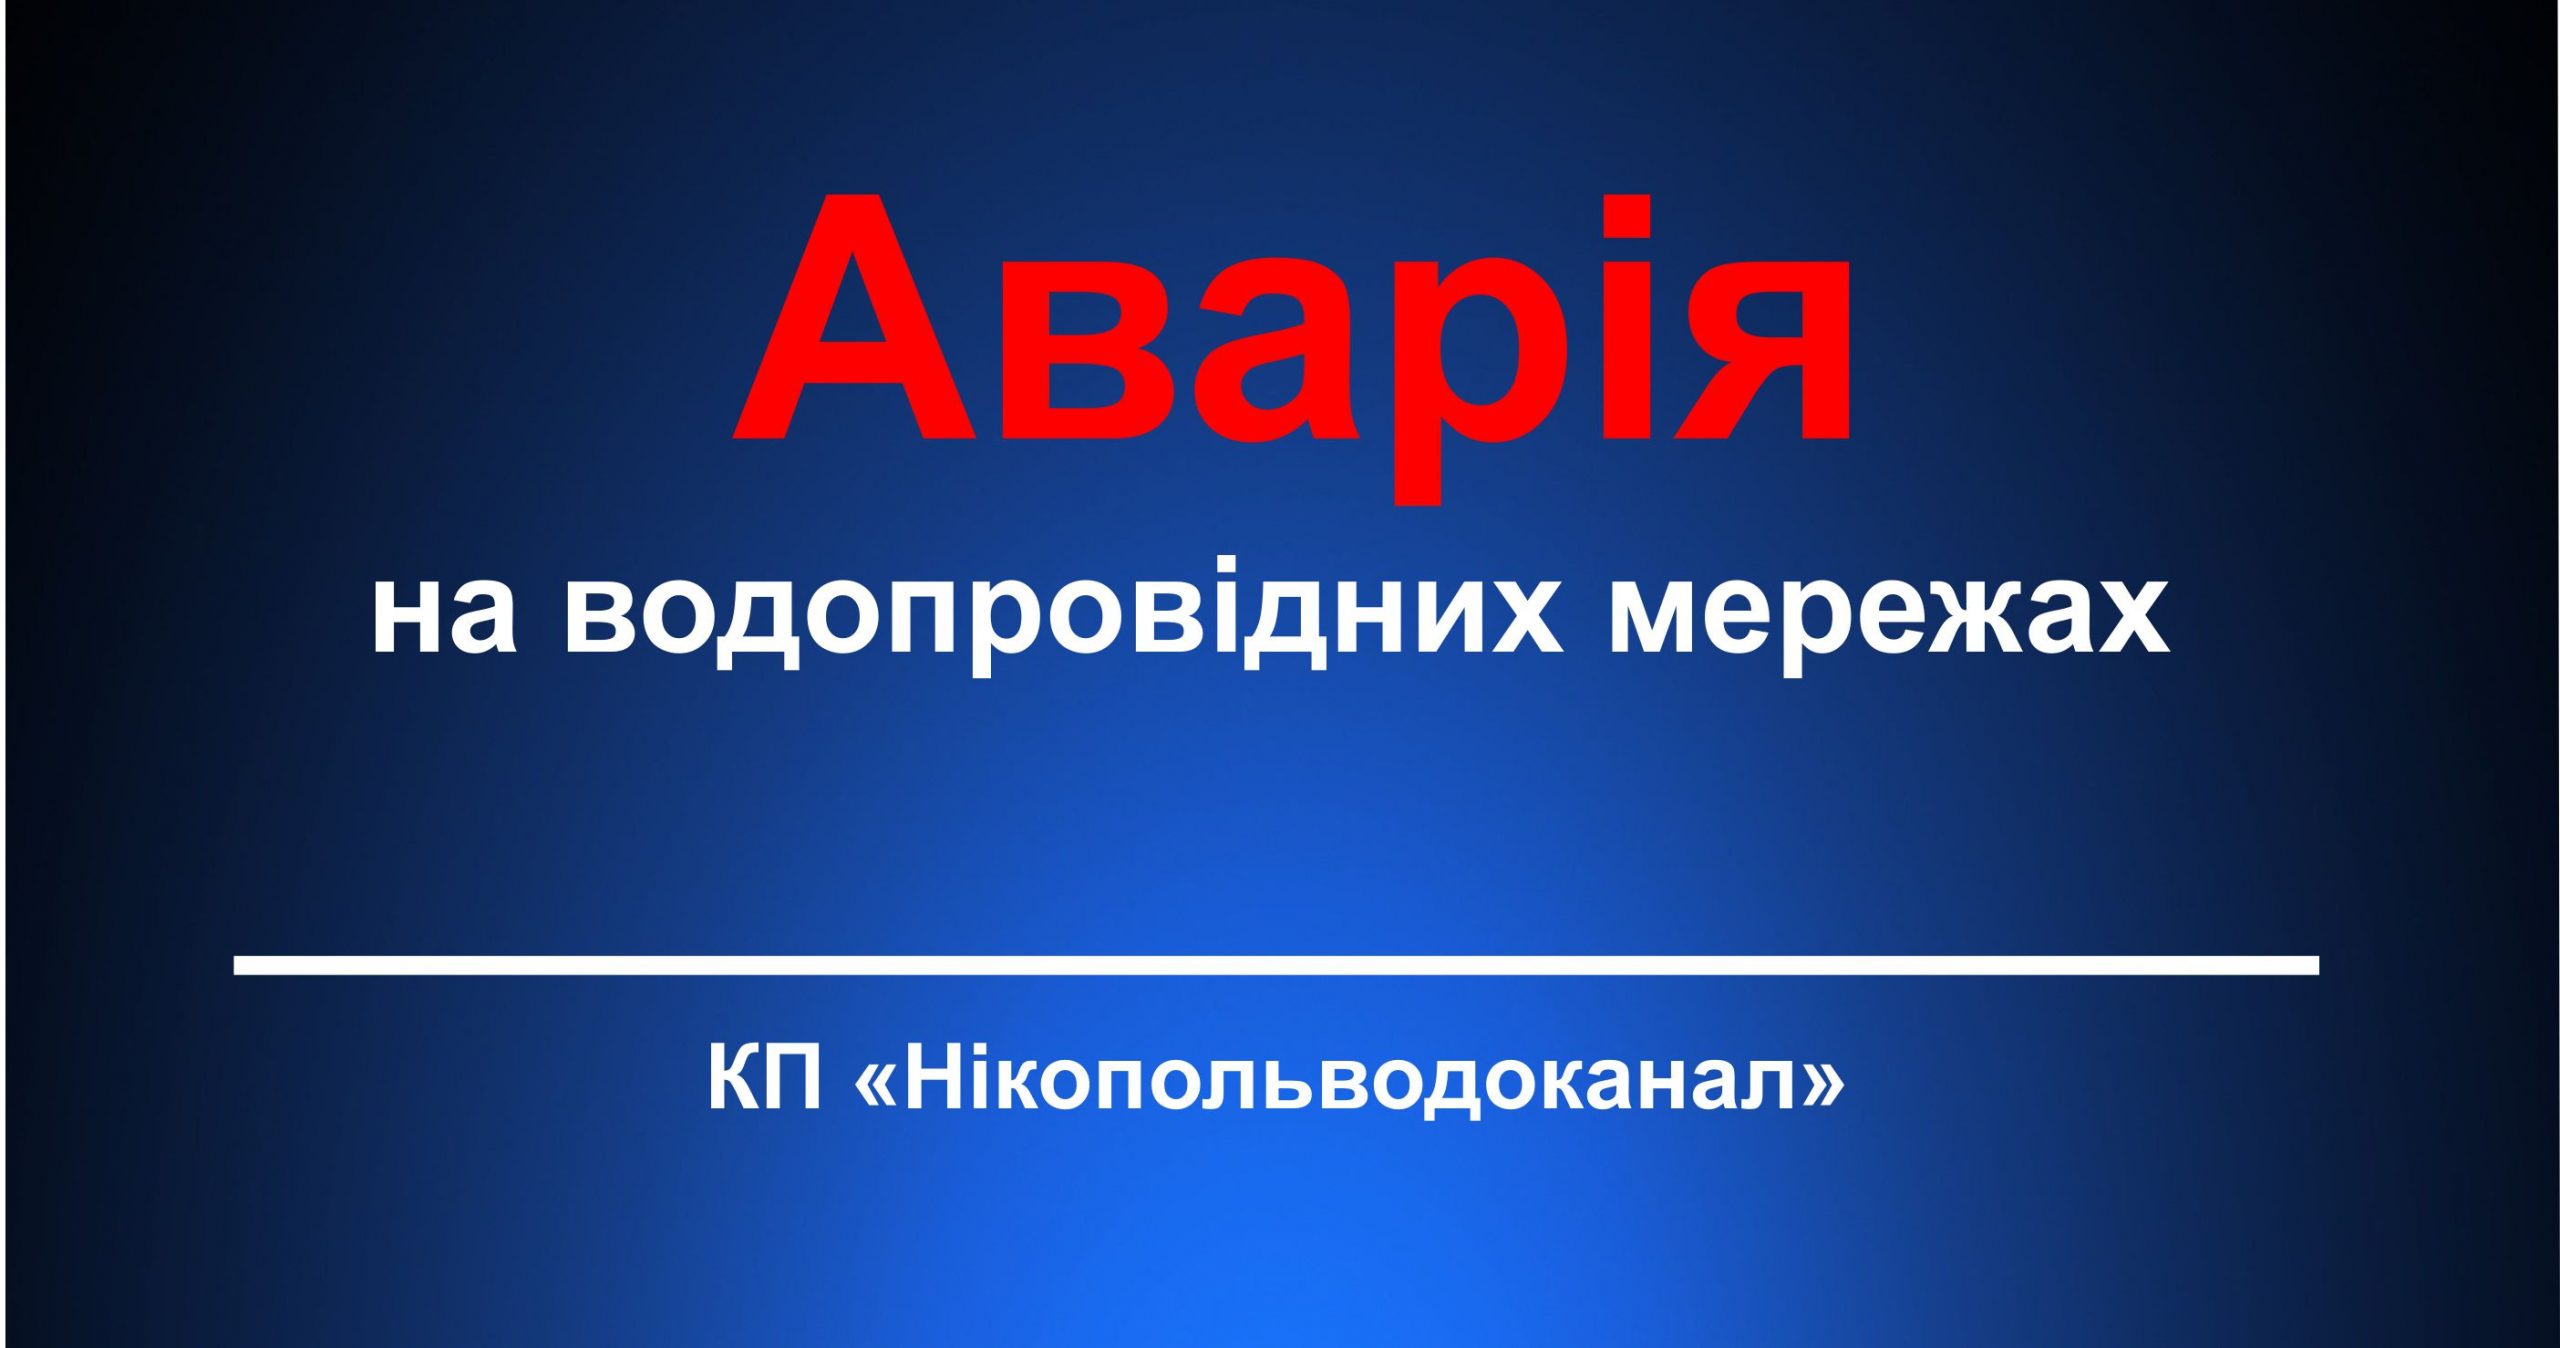 Аварія на перетині вулиць Курська-Каховська, перекрита подача води в данному районі.